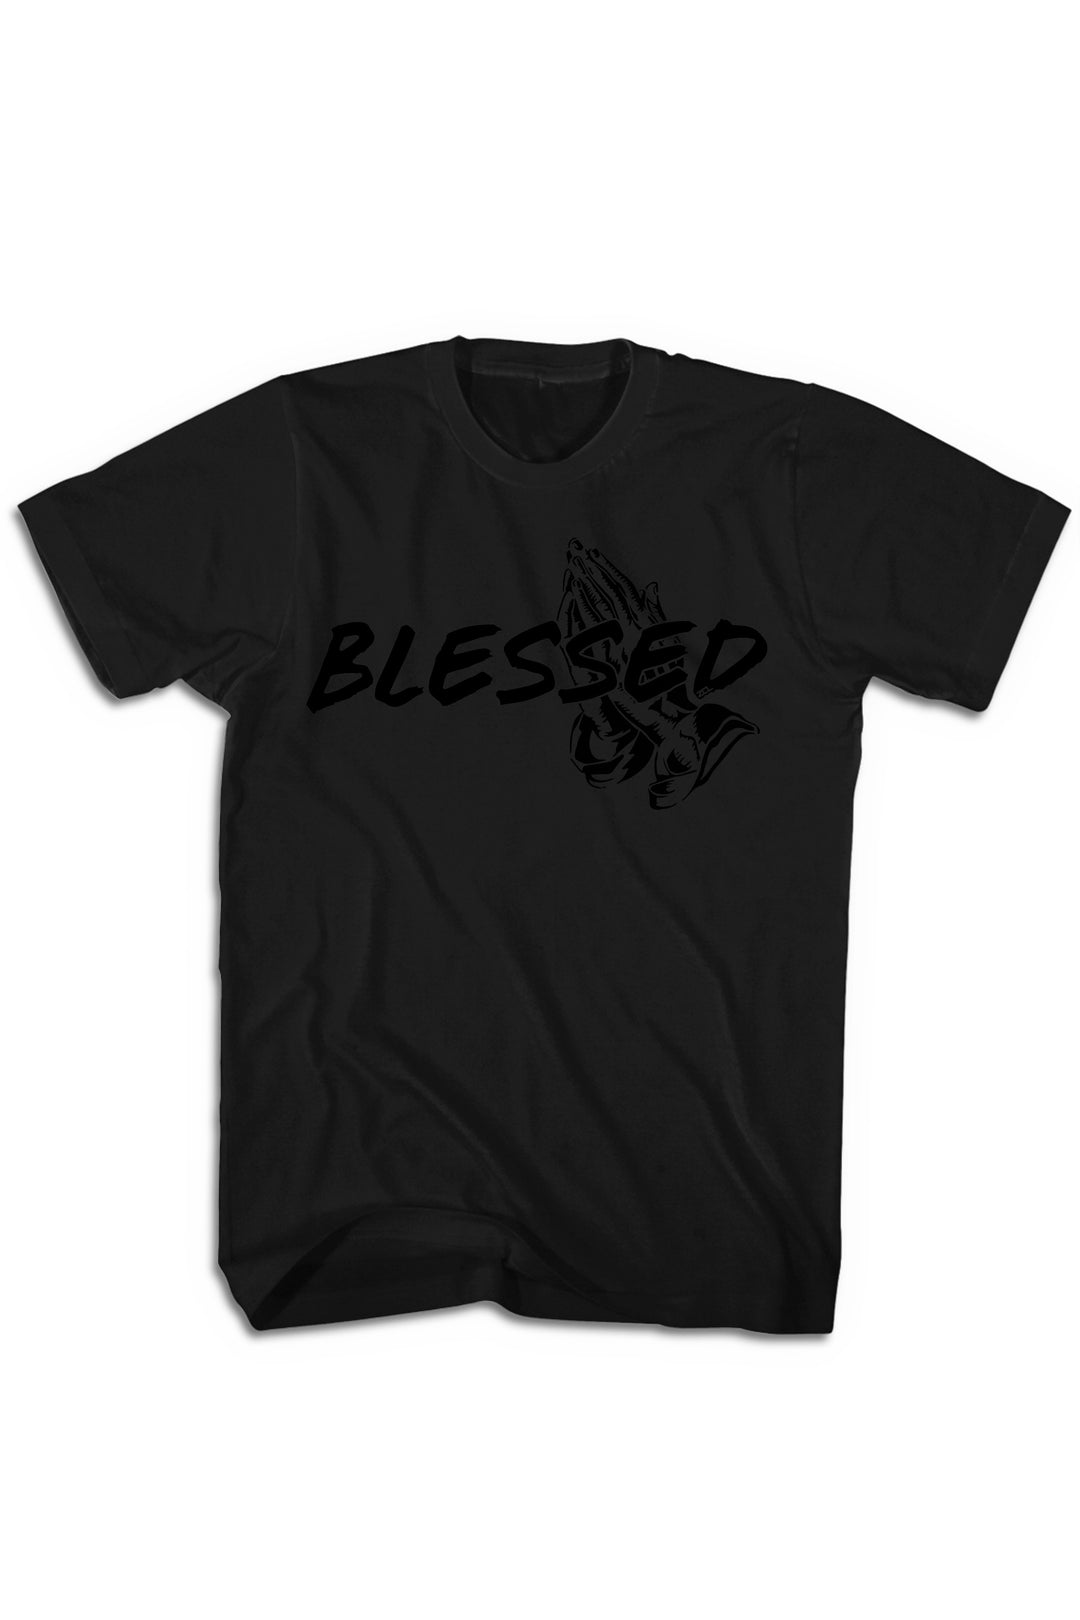 Blessed Tee (Black Logo) - Zamage